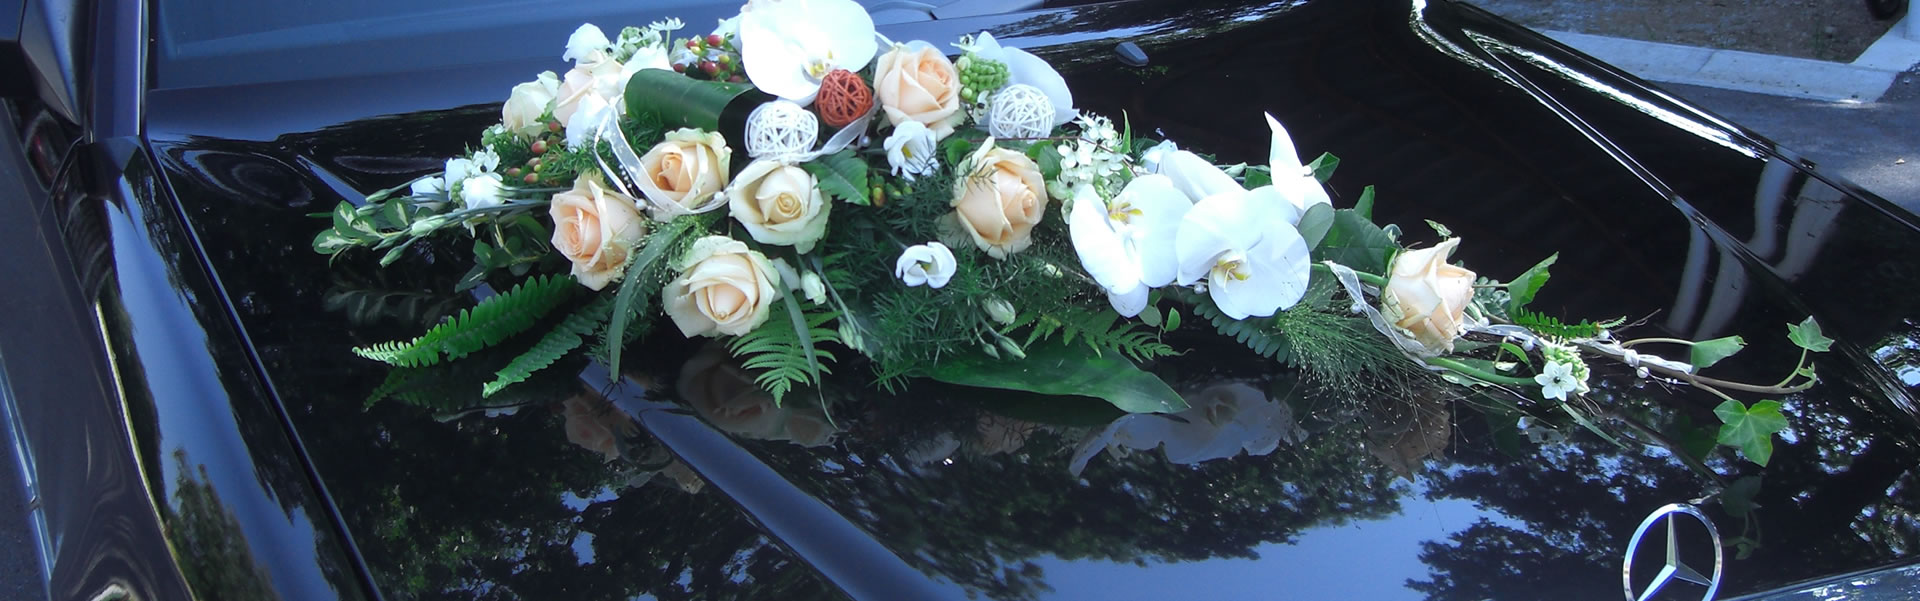 Floristik & Blumenschmuck für feierliche Anlässe oder Grabpflege